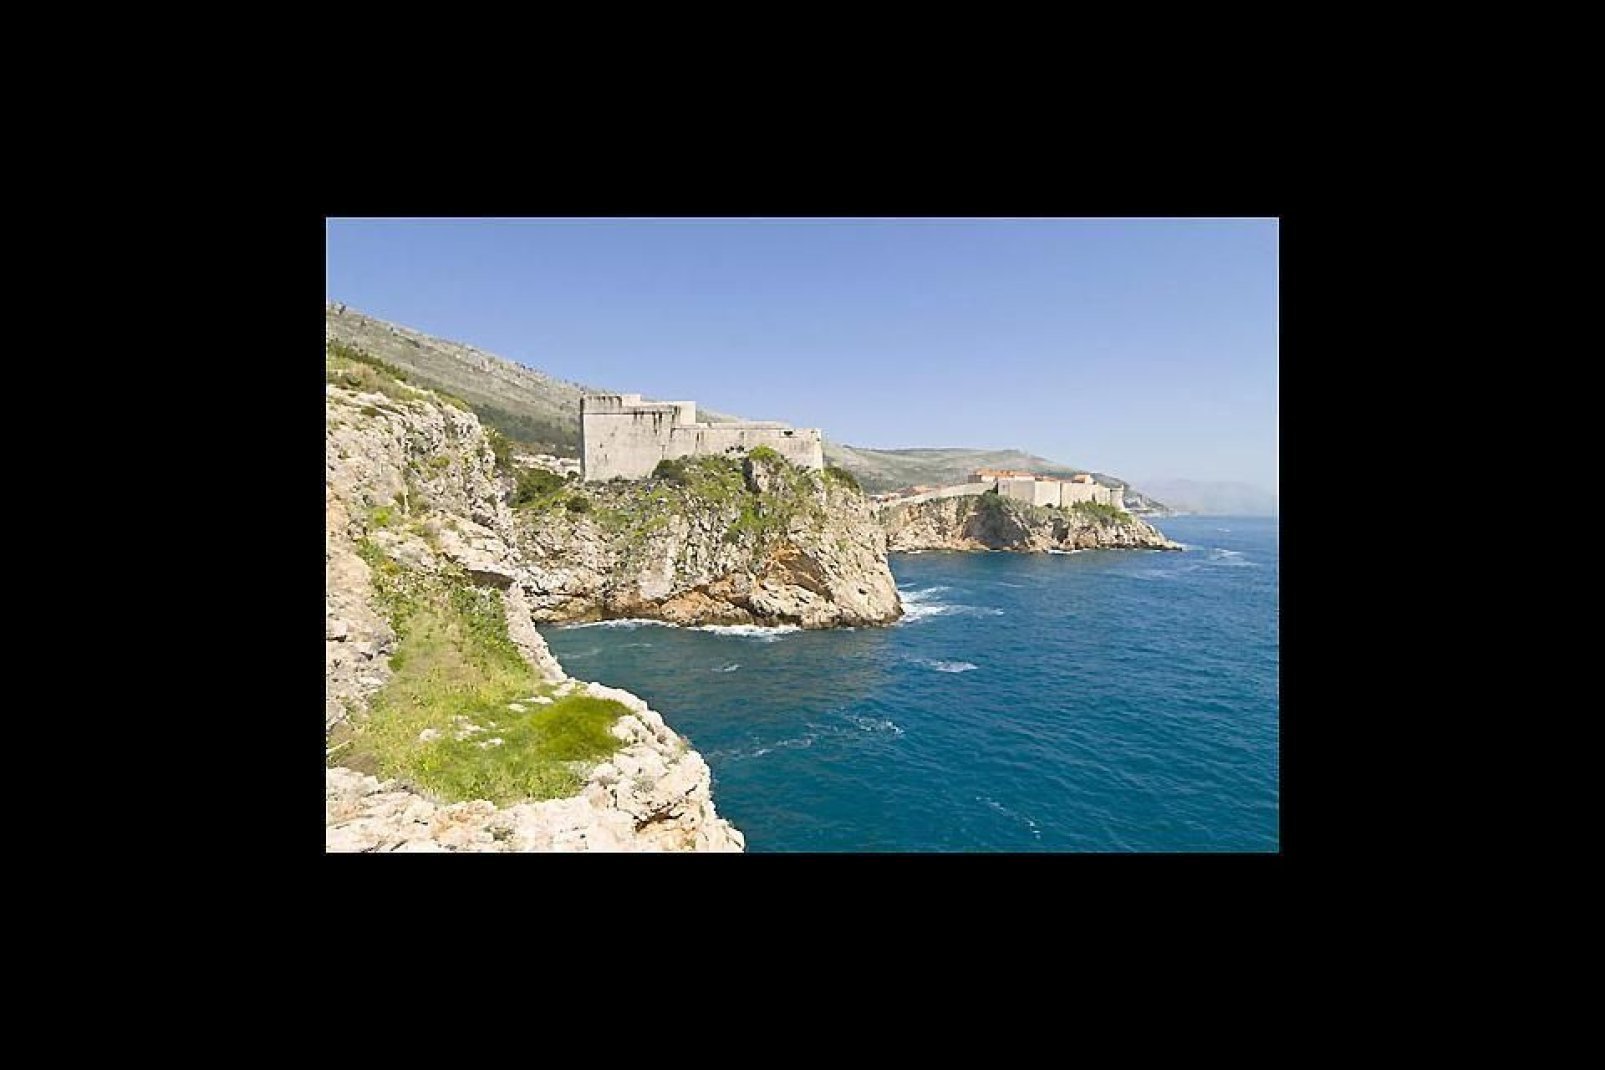 La formación rocosa de una parte de la costa de Dubrovnik.